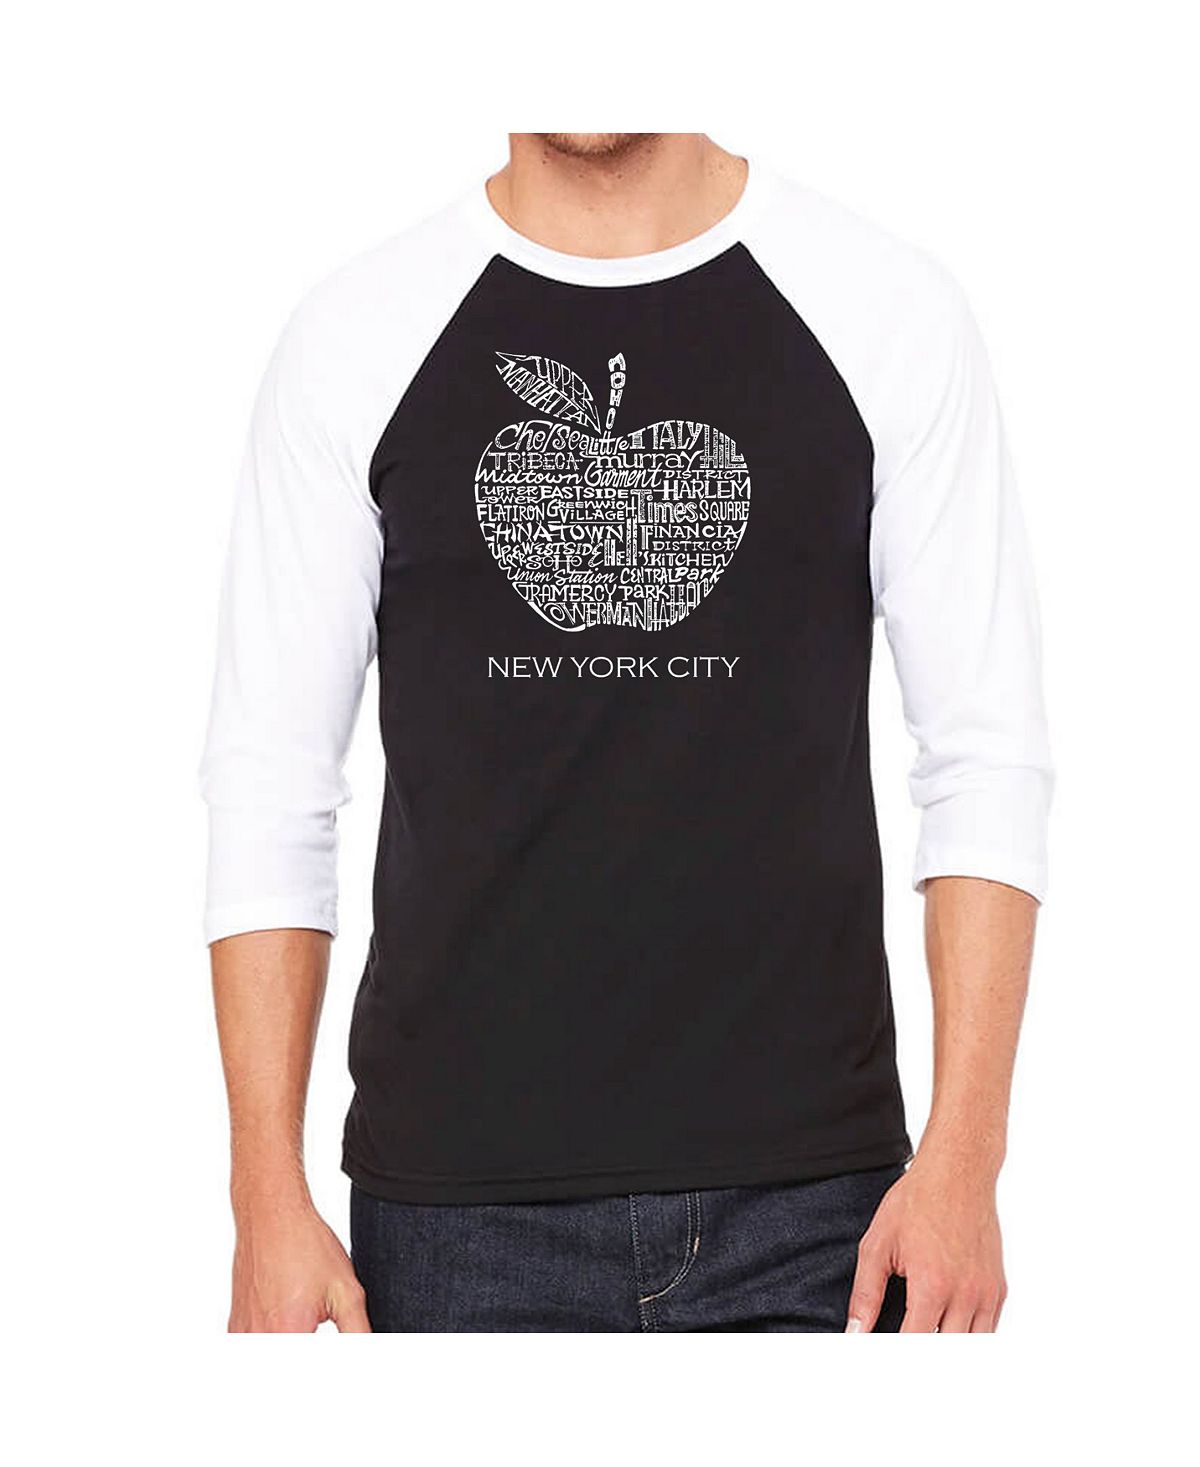 Мужская футболка с надписью reglan и надписью neighborhoods in new york city LA Pop Art, черный new york city